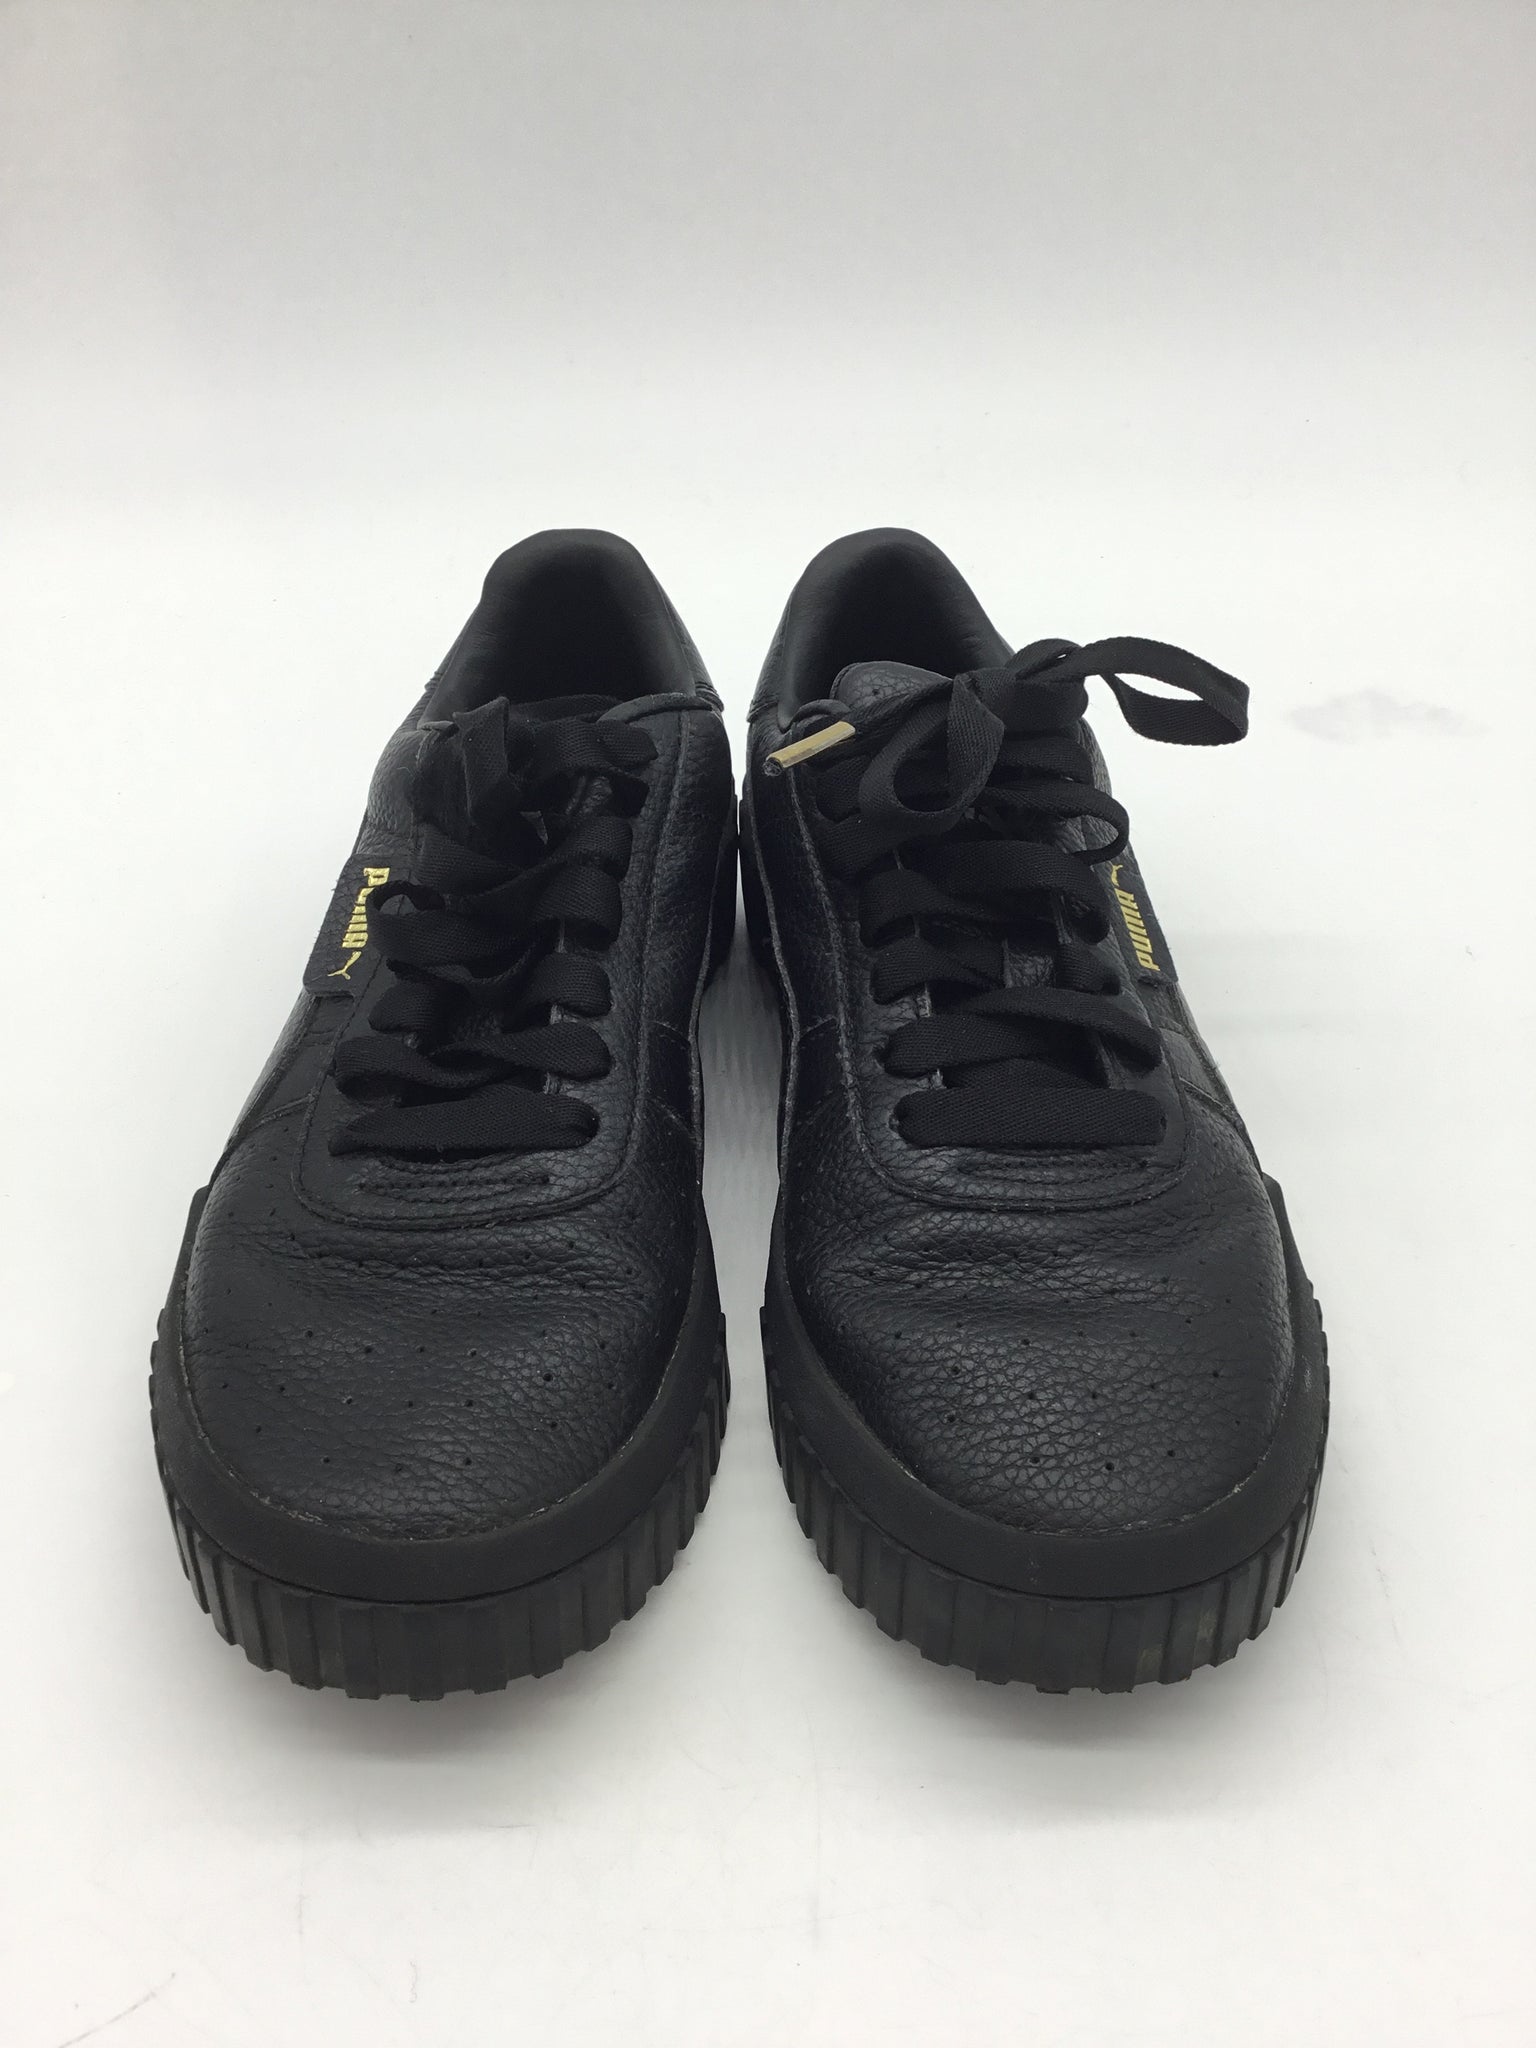 Puma Size 7 Black Shoes